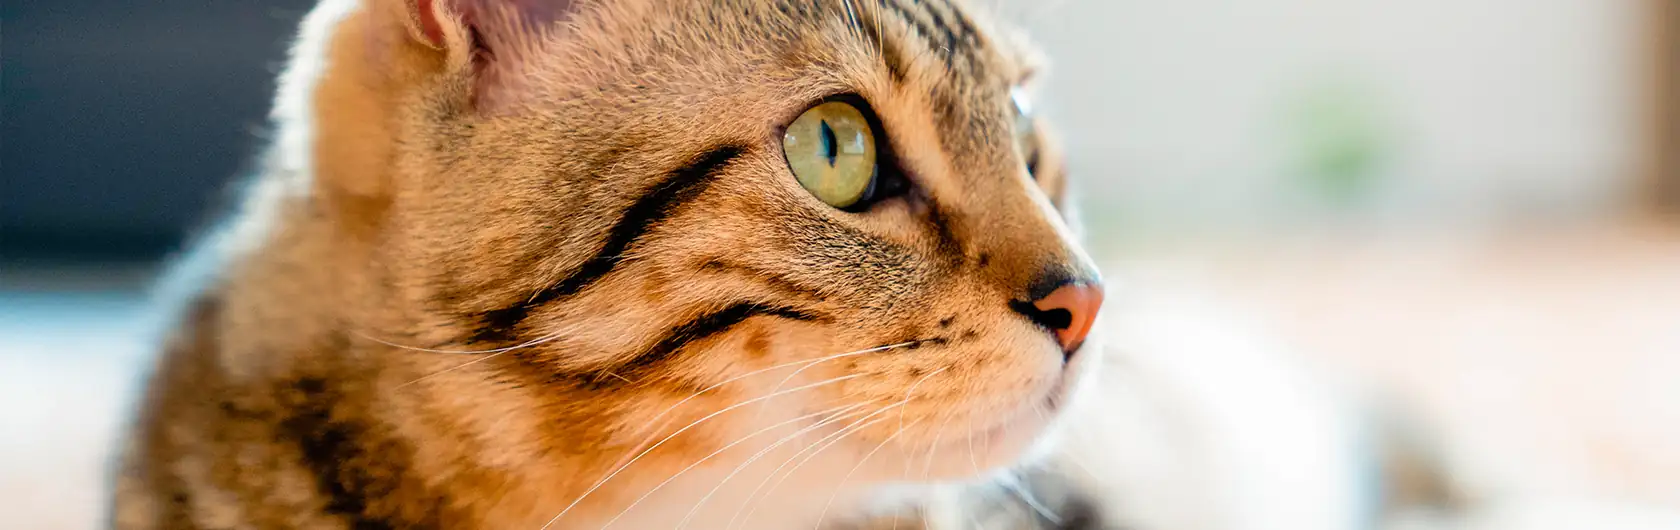 Dermatitis Atópica Felina y comida para gatos de calidad nutribon